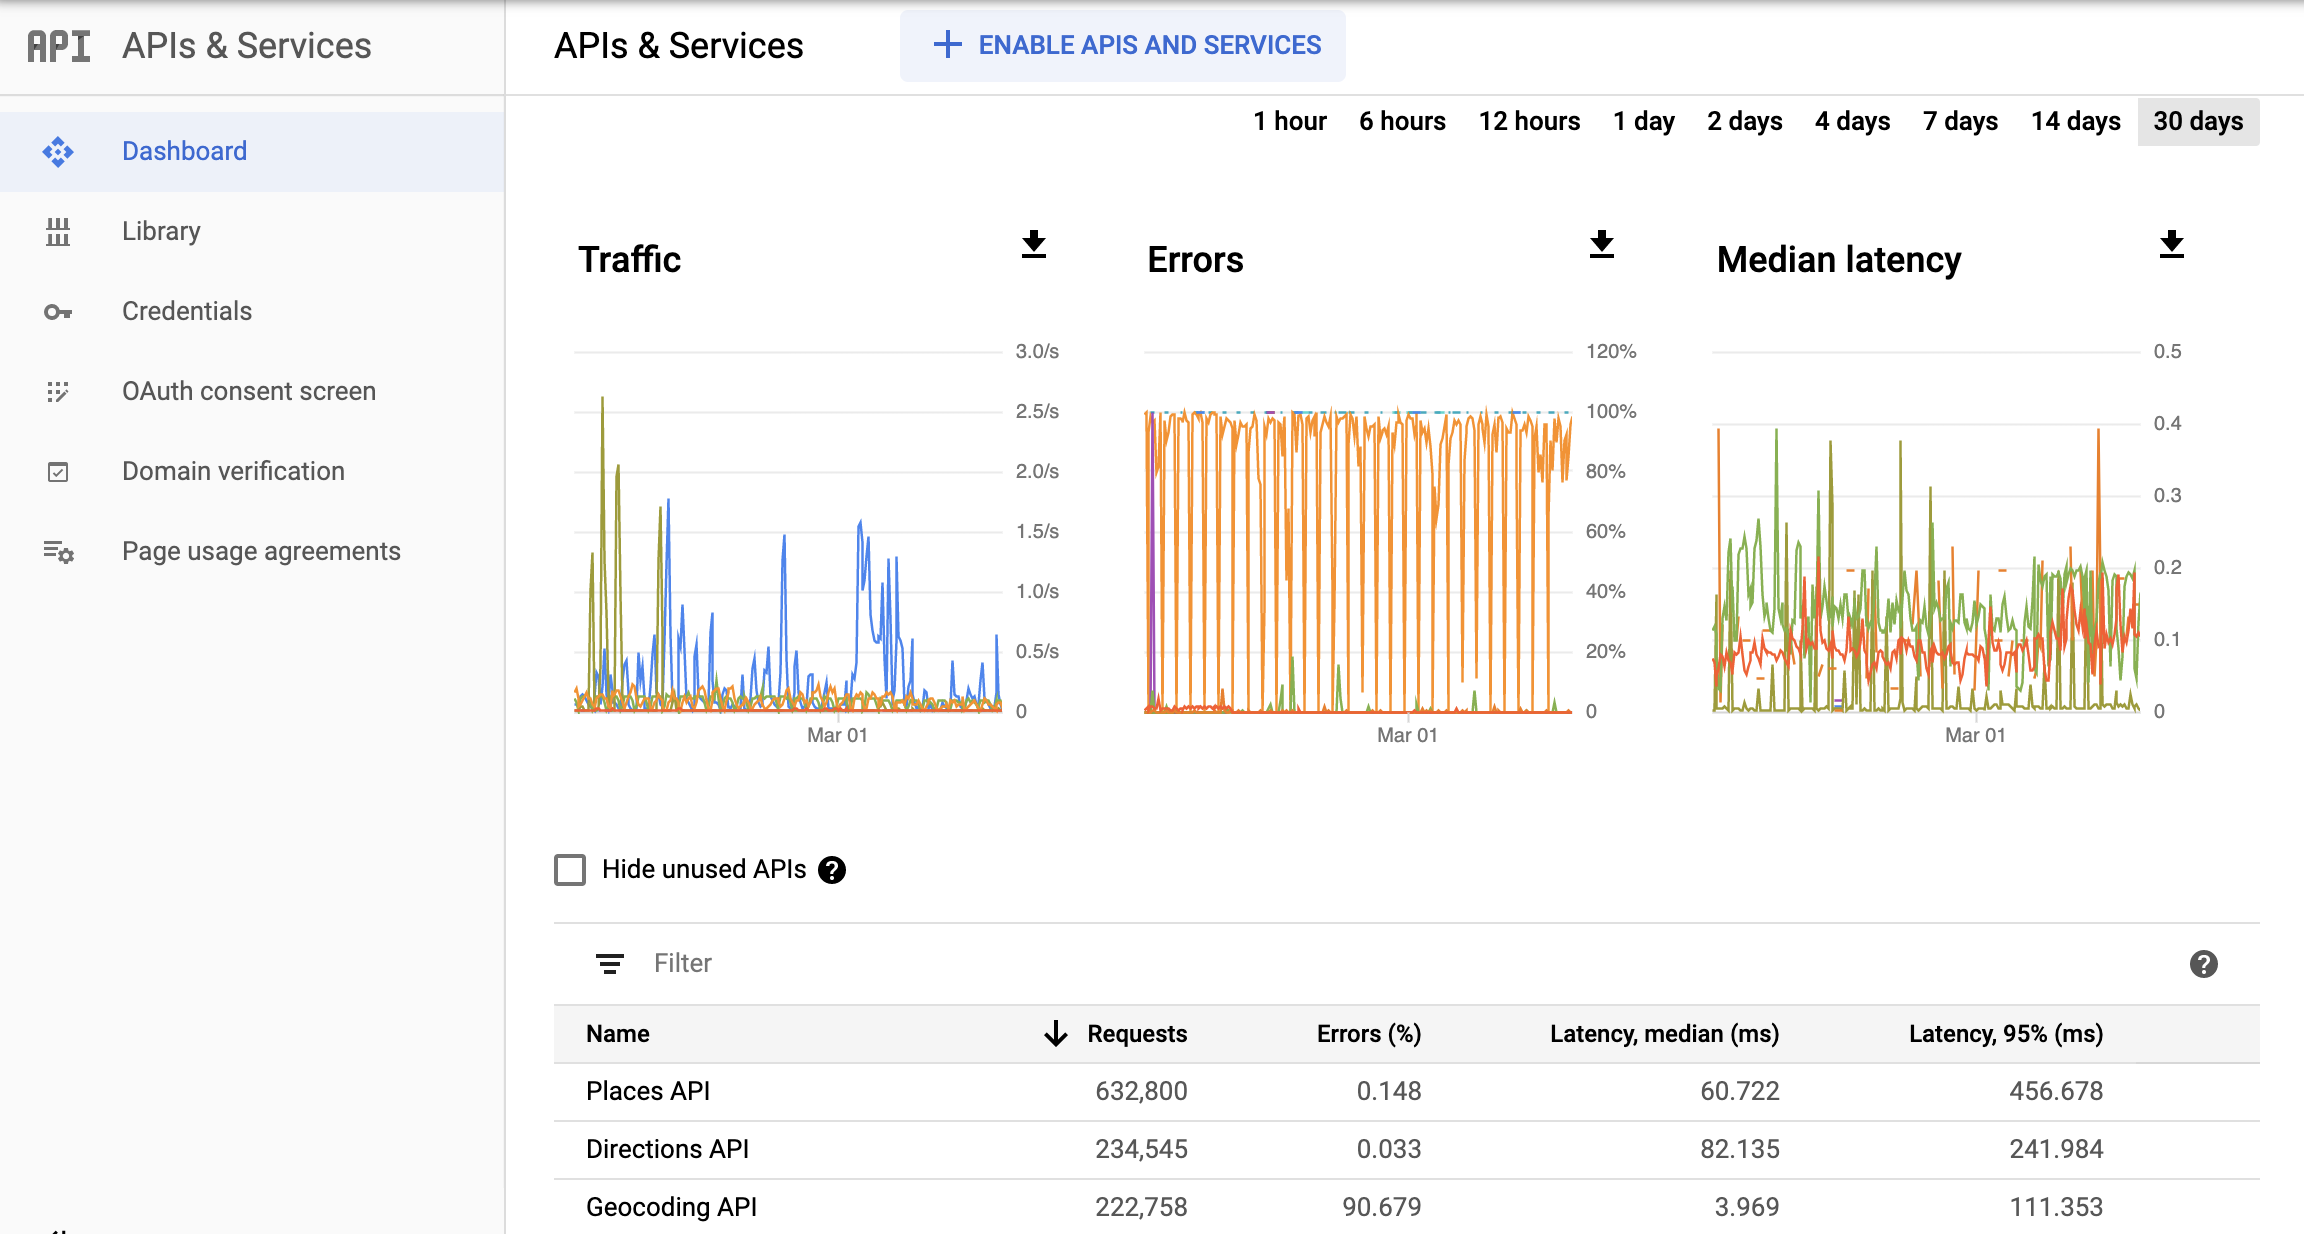 Captura de pantalla de la página de APIs de Monitoring en la consola de Google Cloud, que muestra el panel de informes APIs y servicios (APIs & Services). Muestra gráficos separados de Tráfico (Traffic), Errores (Errors) y Mediana de latencia (Median Latency). Estos gráficos pueden mostrar los datos correspondientes al lapso de una hora hasta 30 días.